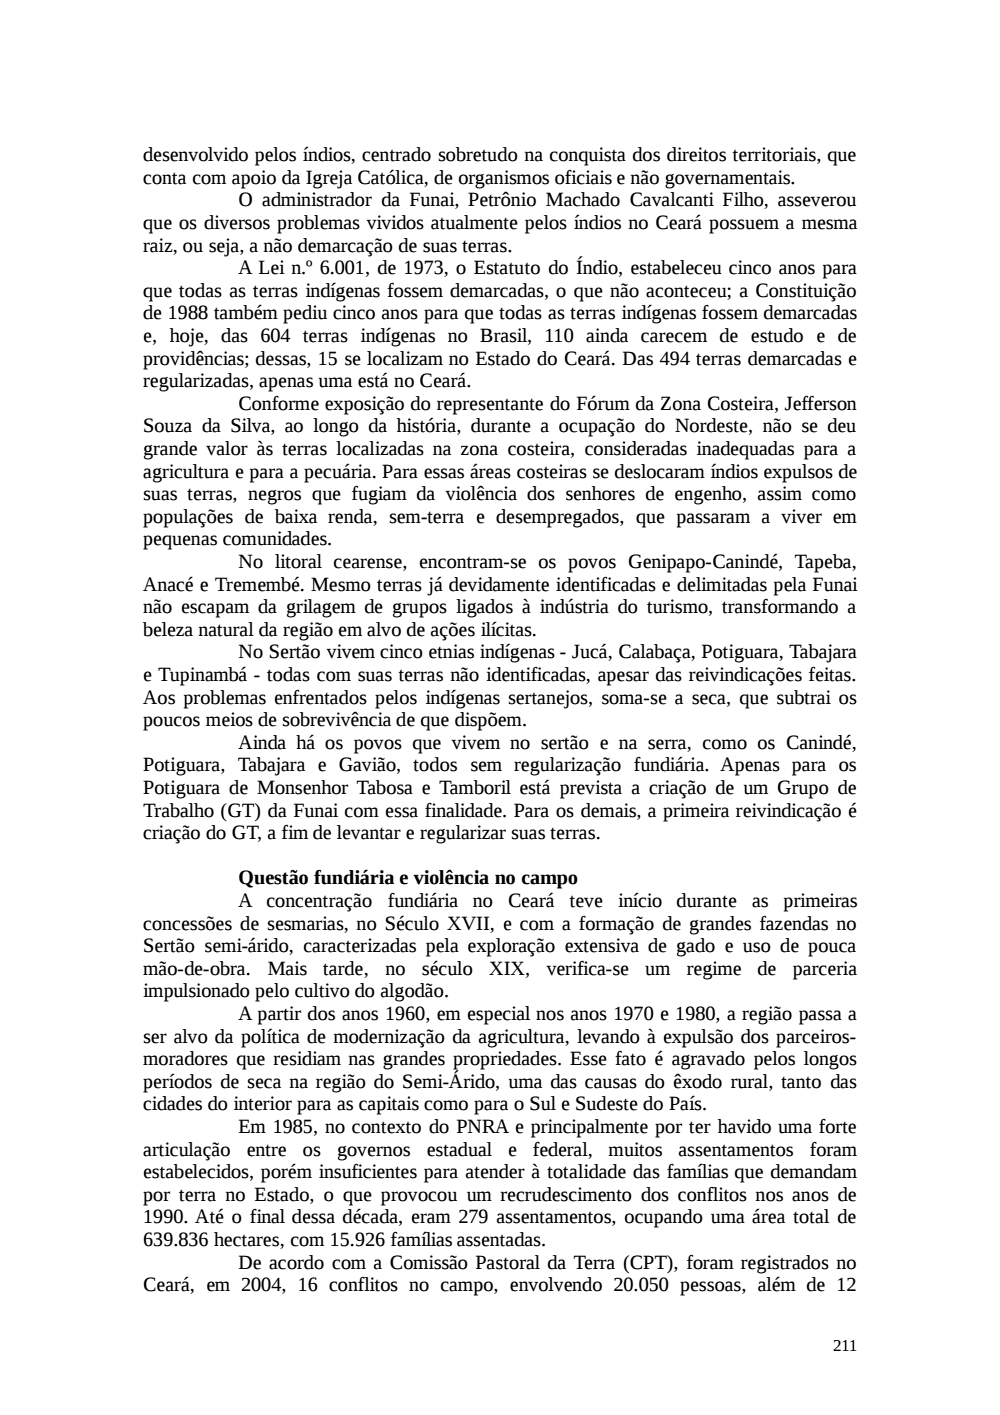 Page 211 from Relatório final da comissão